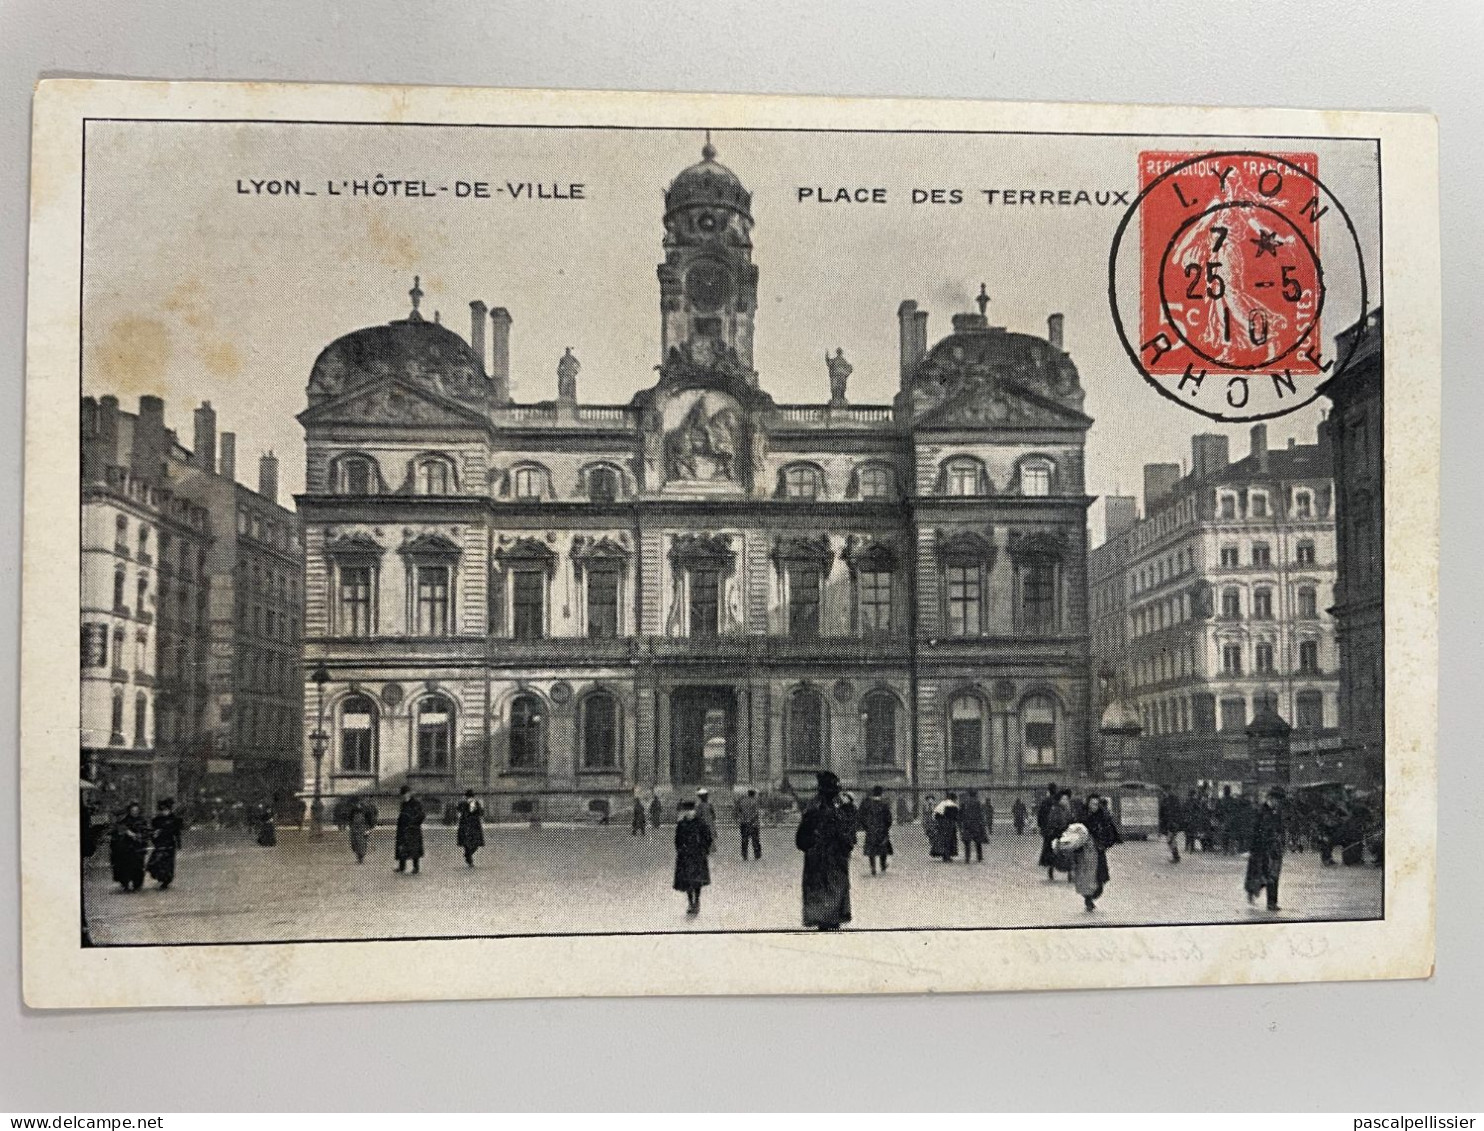 CPA - 69 - LYON - Place Des Terreaux - Hôtel De Ville - Entier Postal 5c Orange Cachet 1910 Parfait - Très Beau Et Net - Lyon 9